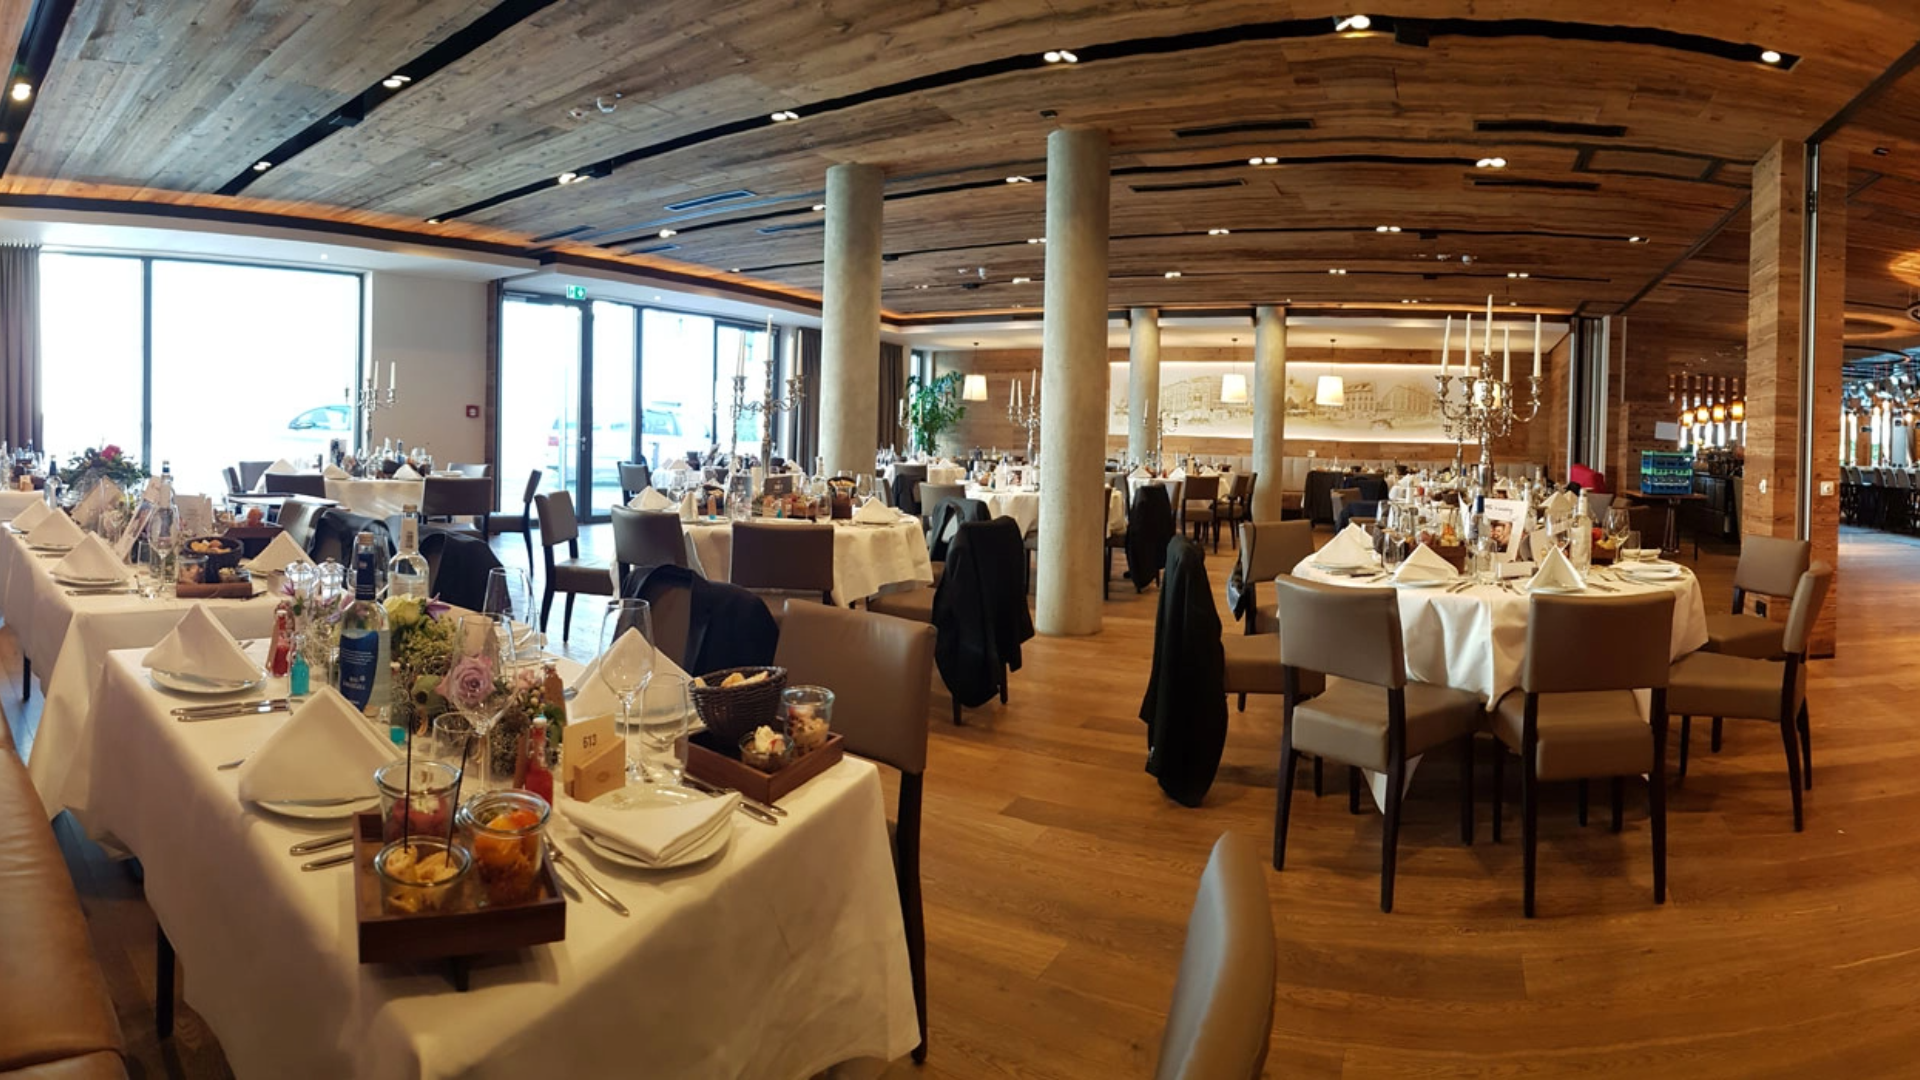 Ein großer Speisesaal mit Tischen und Stühlen für Veranstaltungen wie Hochzeiten oder Partys.